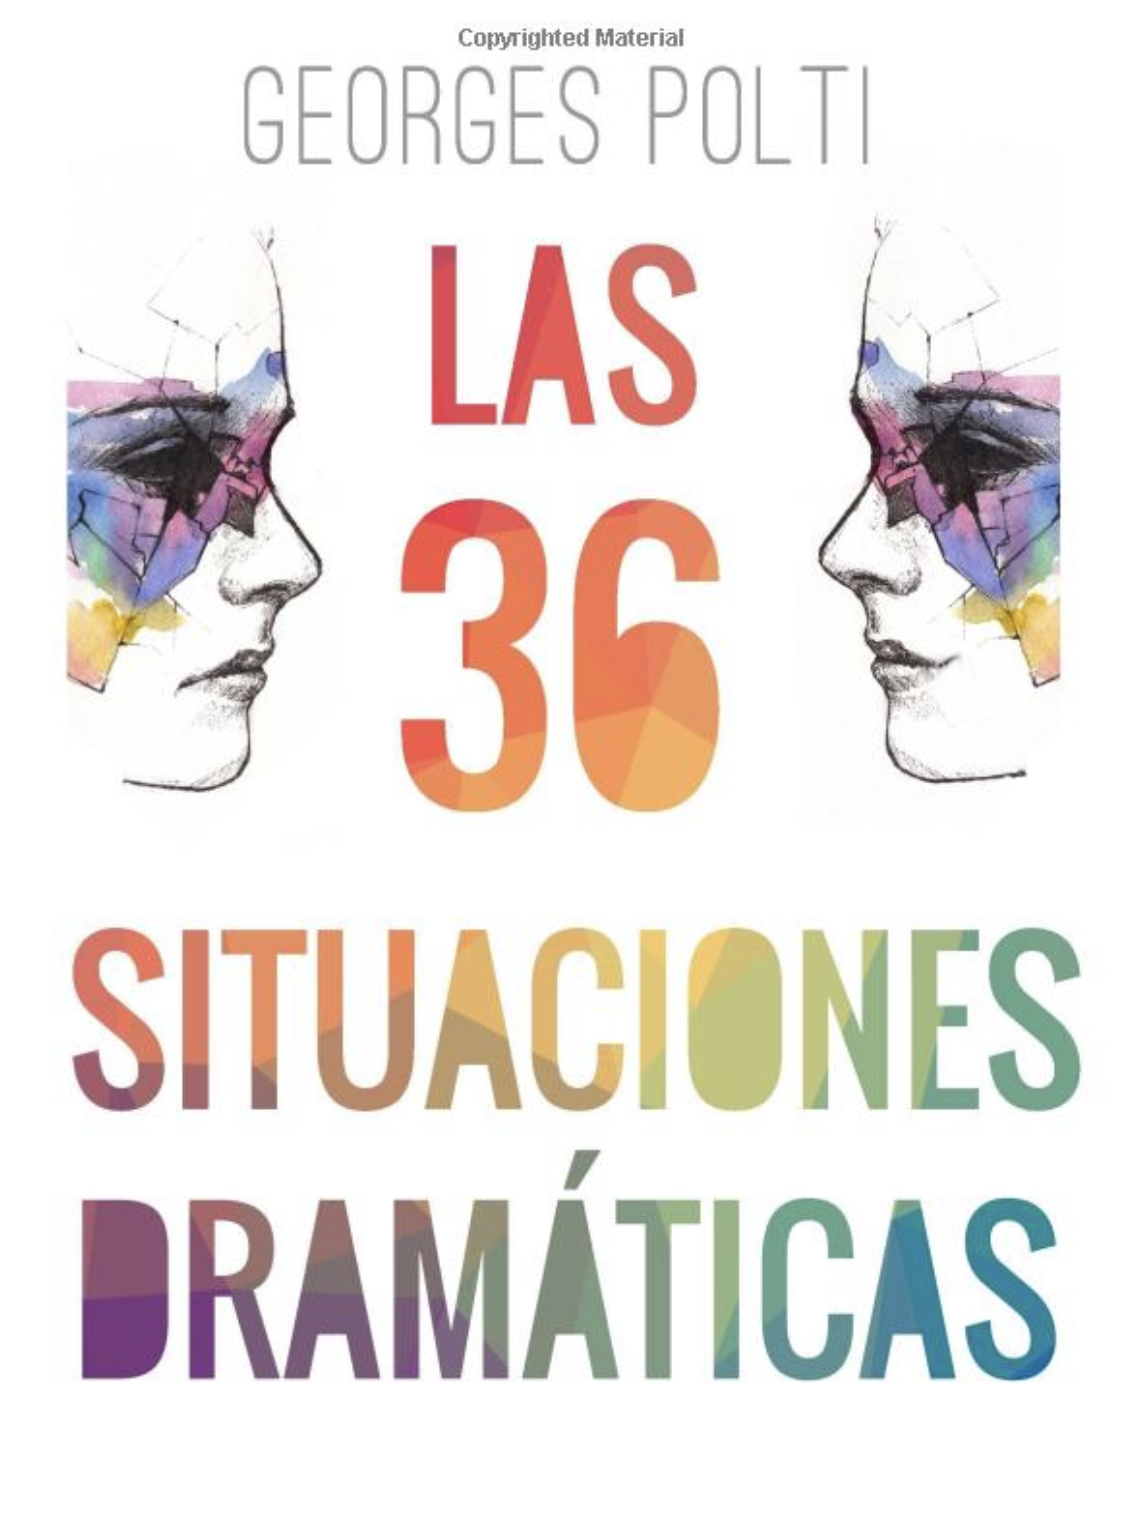 Las 36 situaciones dramáticas de Georges Polti: una guía para la creatividad narrativa